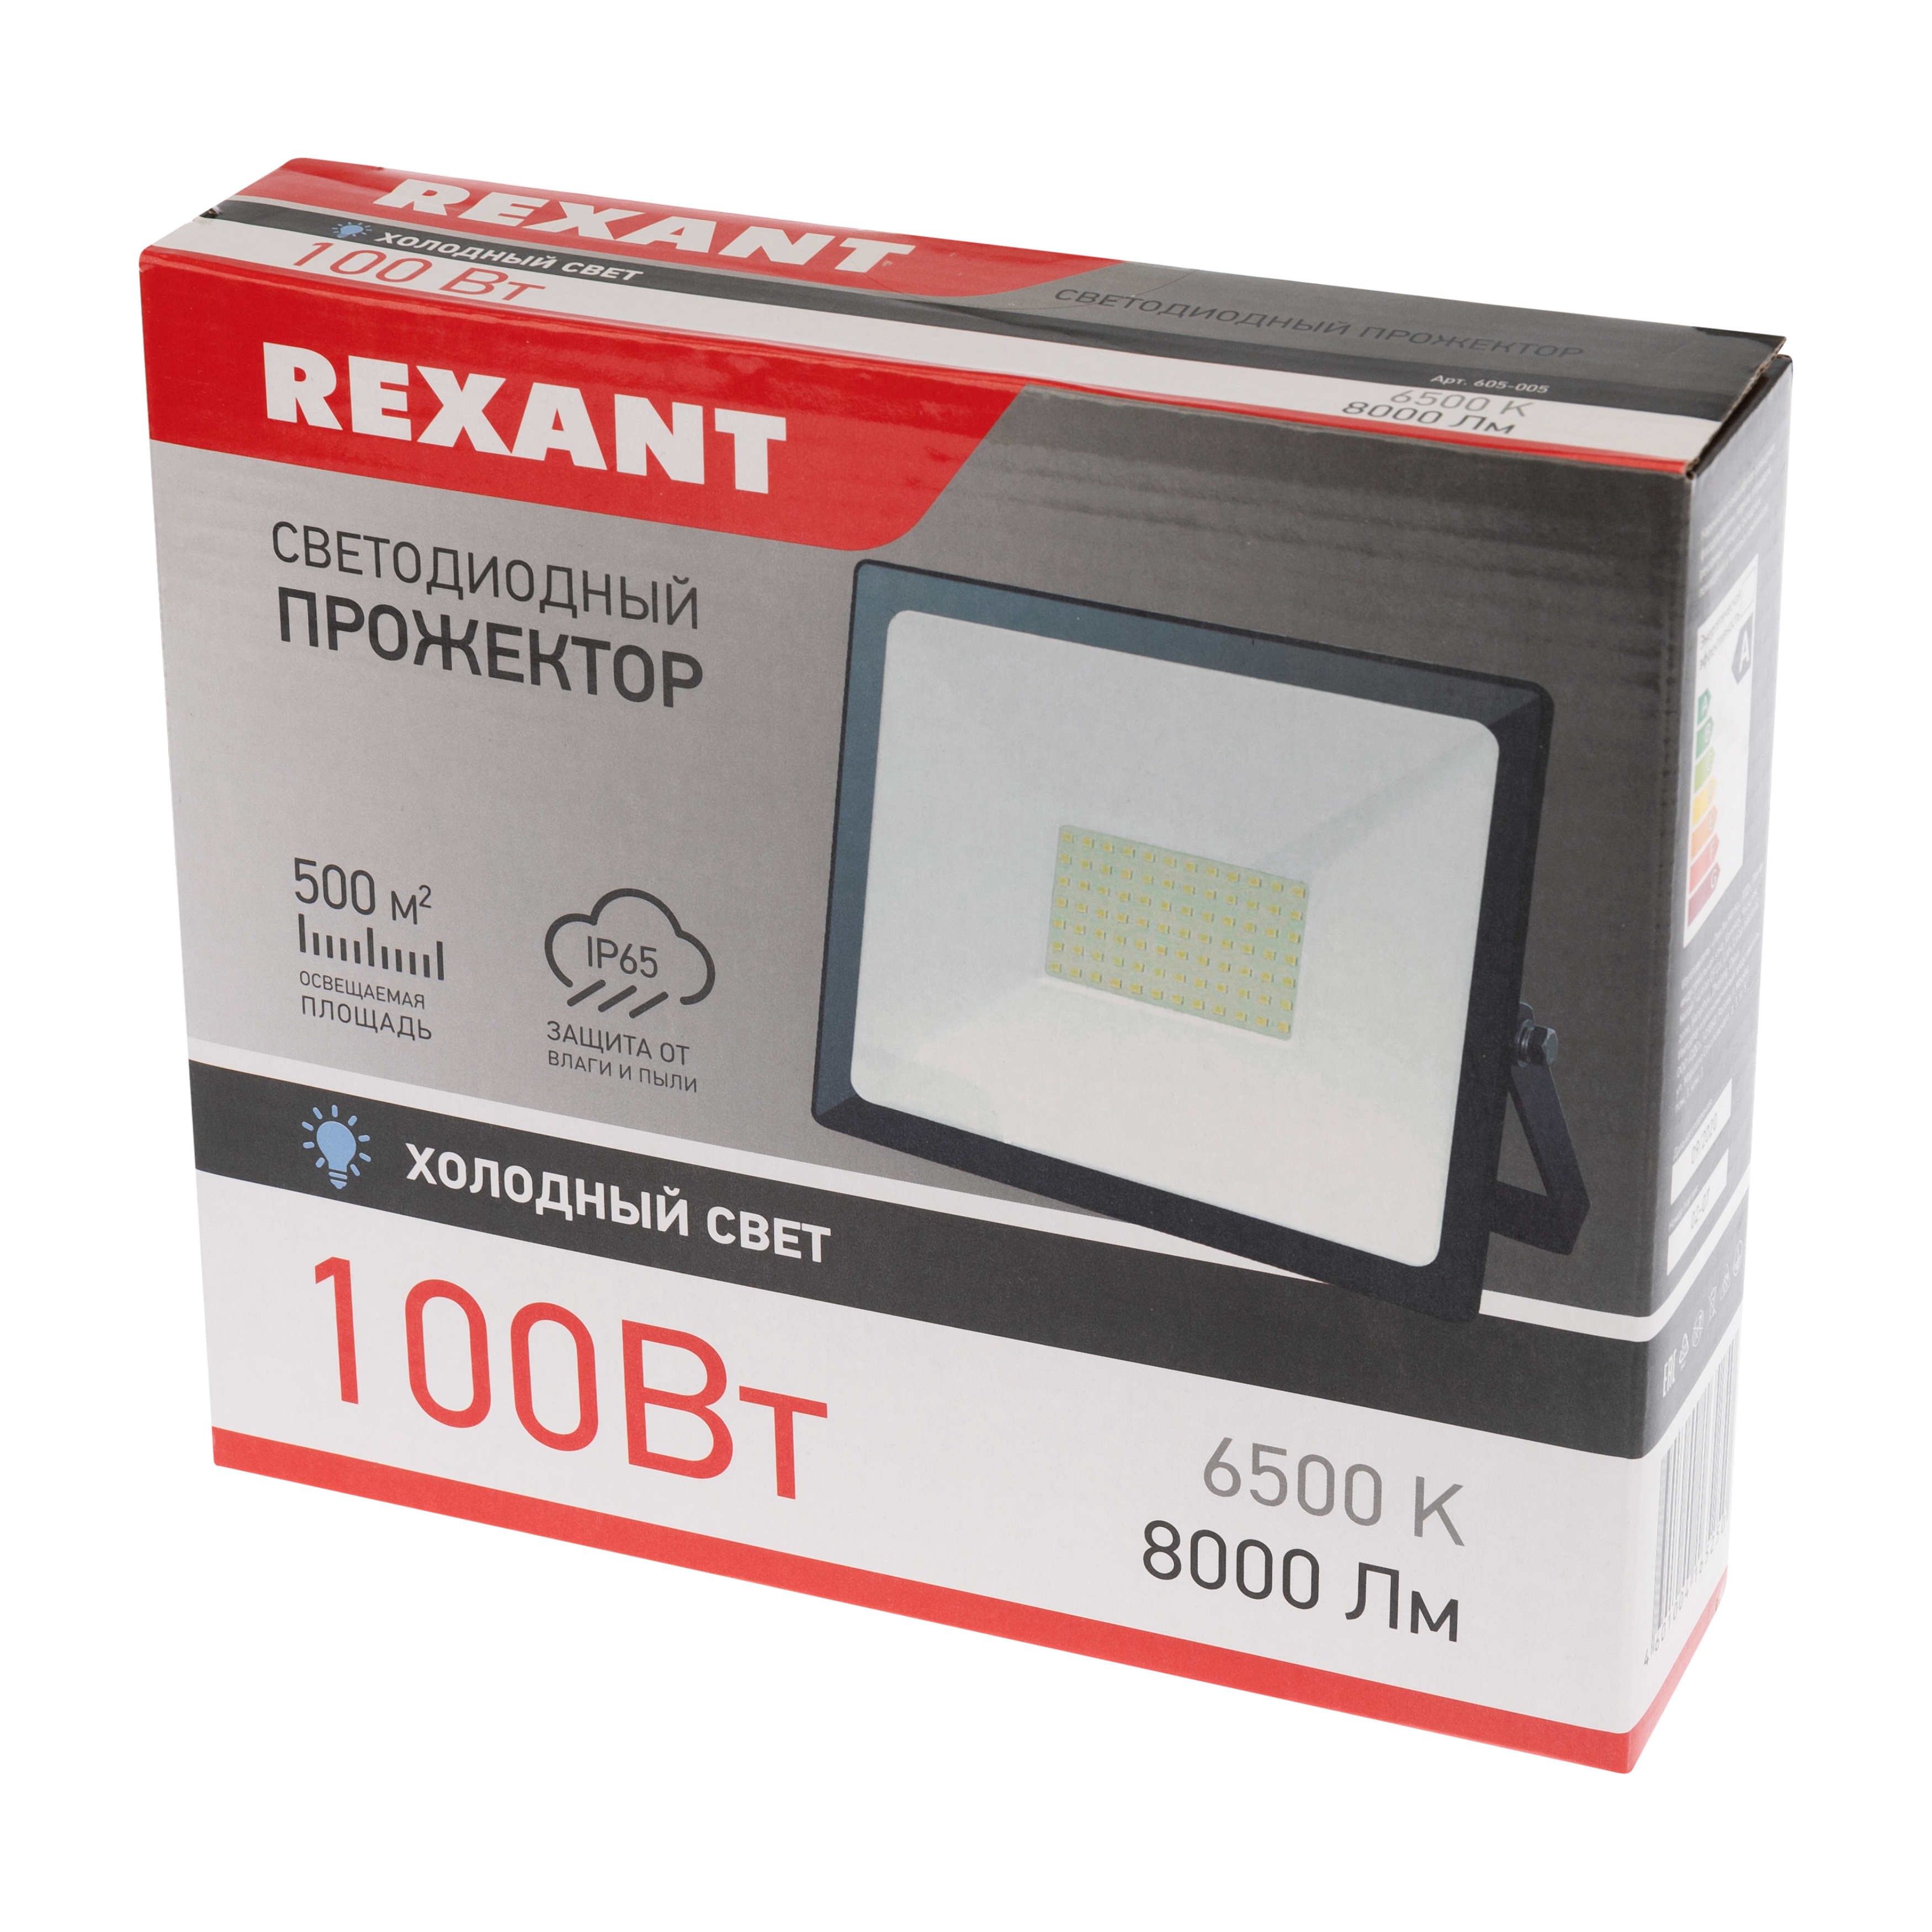 Прожектор REXANT 100 Вт светодиодный 8000Лм 6500К холодный свет черный корпус - фото 5